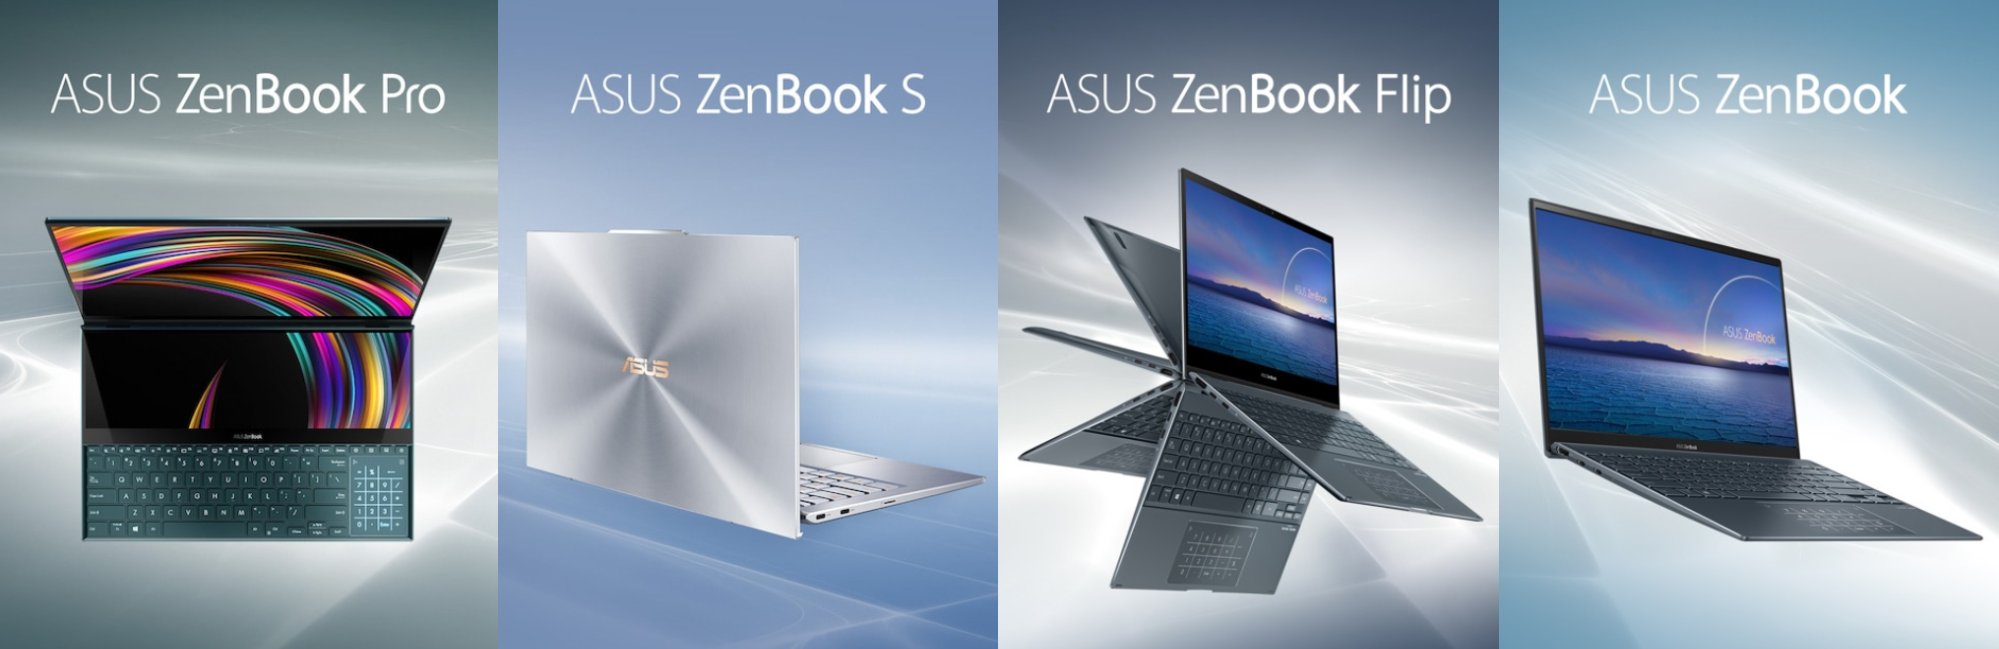 Ноутбук Asus Zenbook 13 Ux325ja Купить